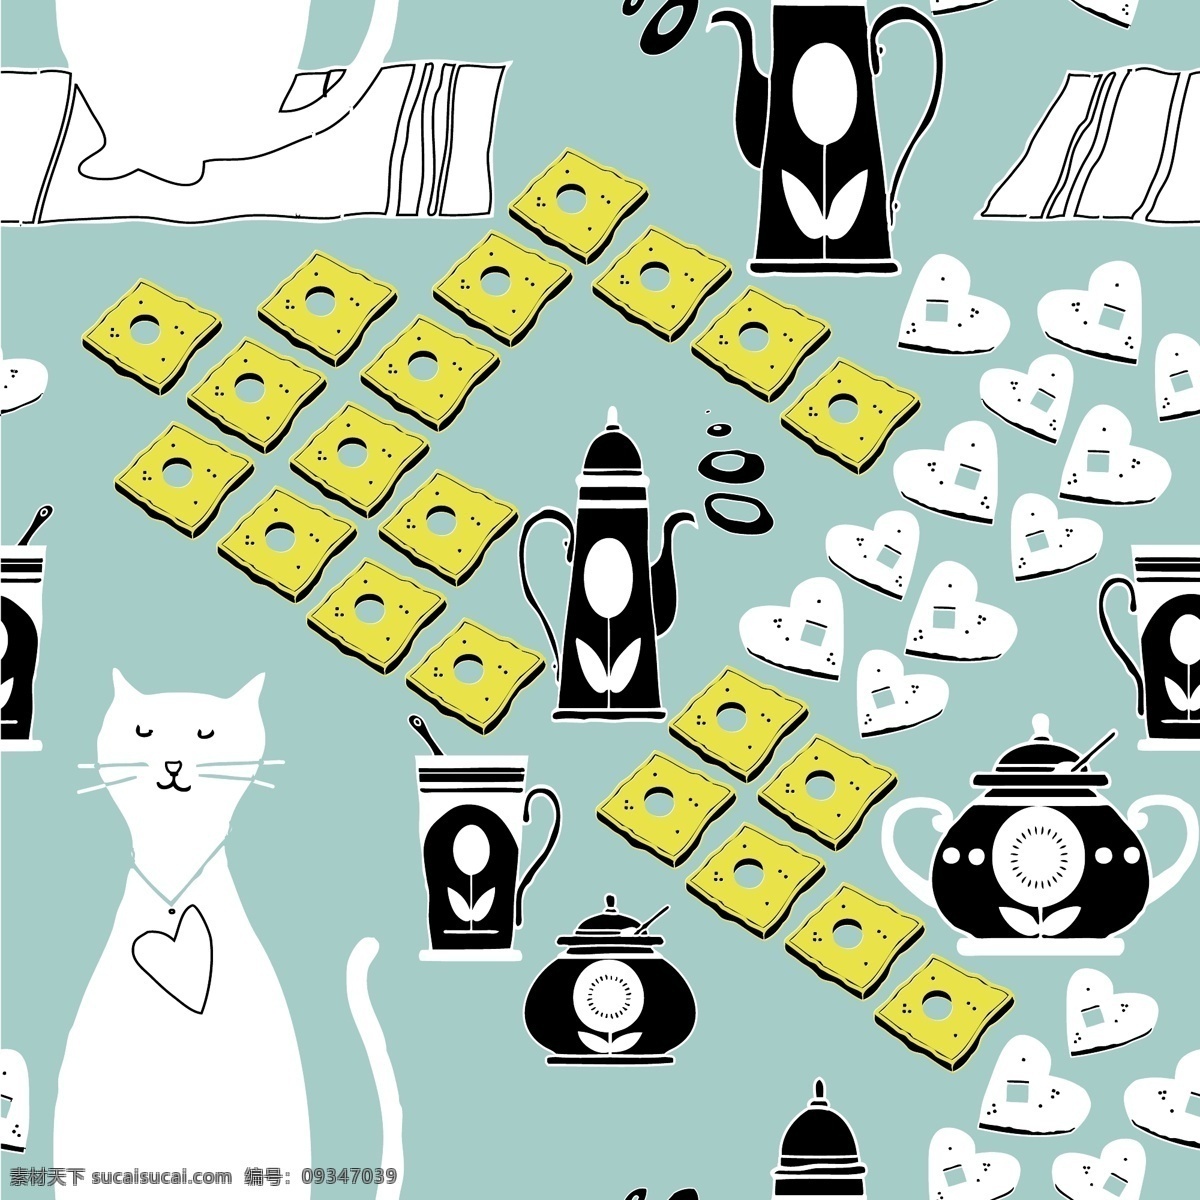 小猫 剪影 西式 茶点 背景 矢量 背景图片素材 茶杯 茶壶 卡通风格 小猫剪影 矢量图 其他矢量图